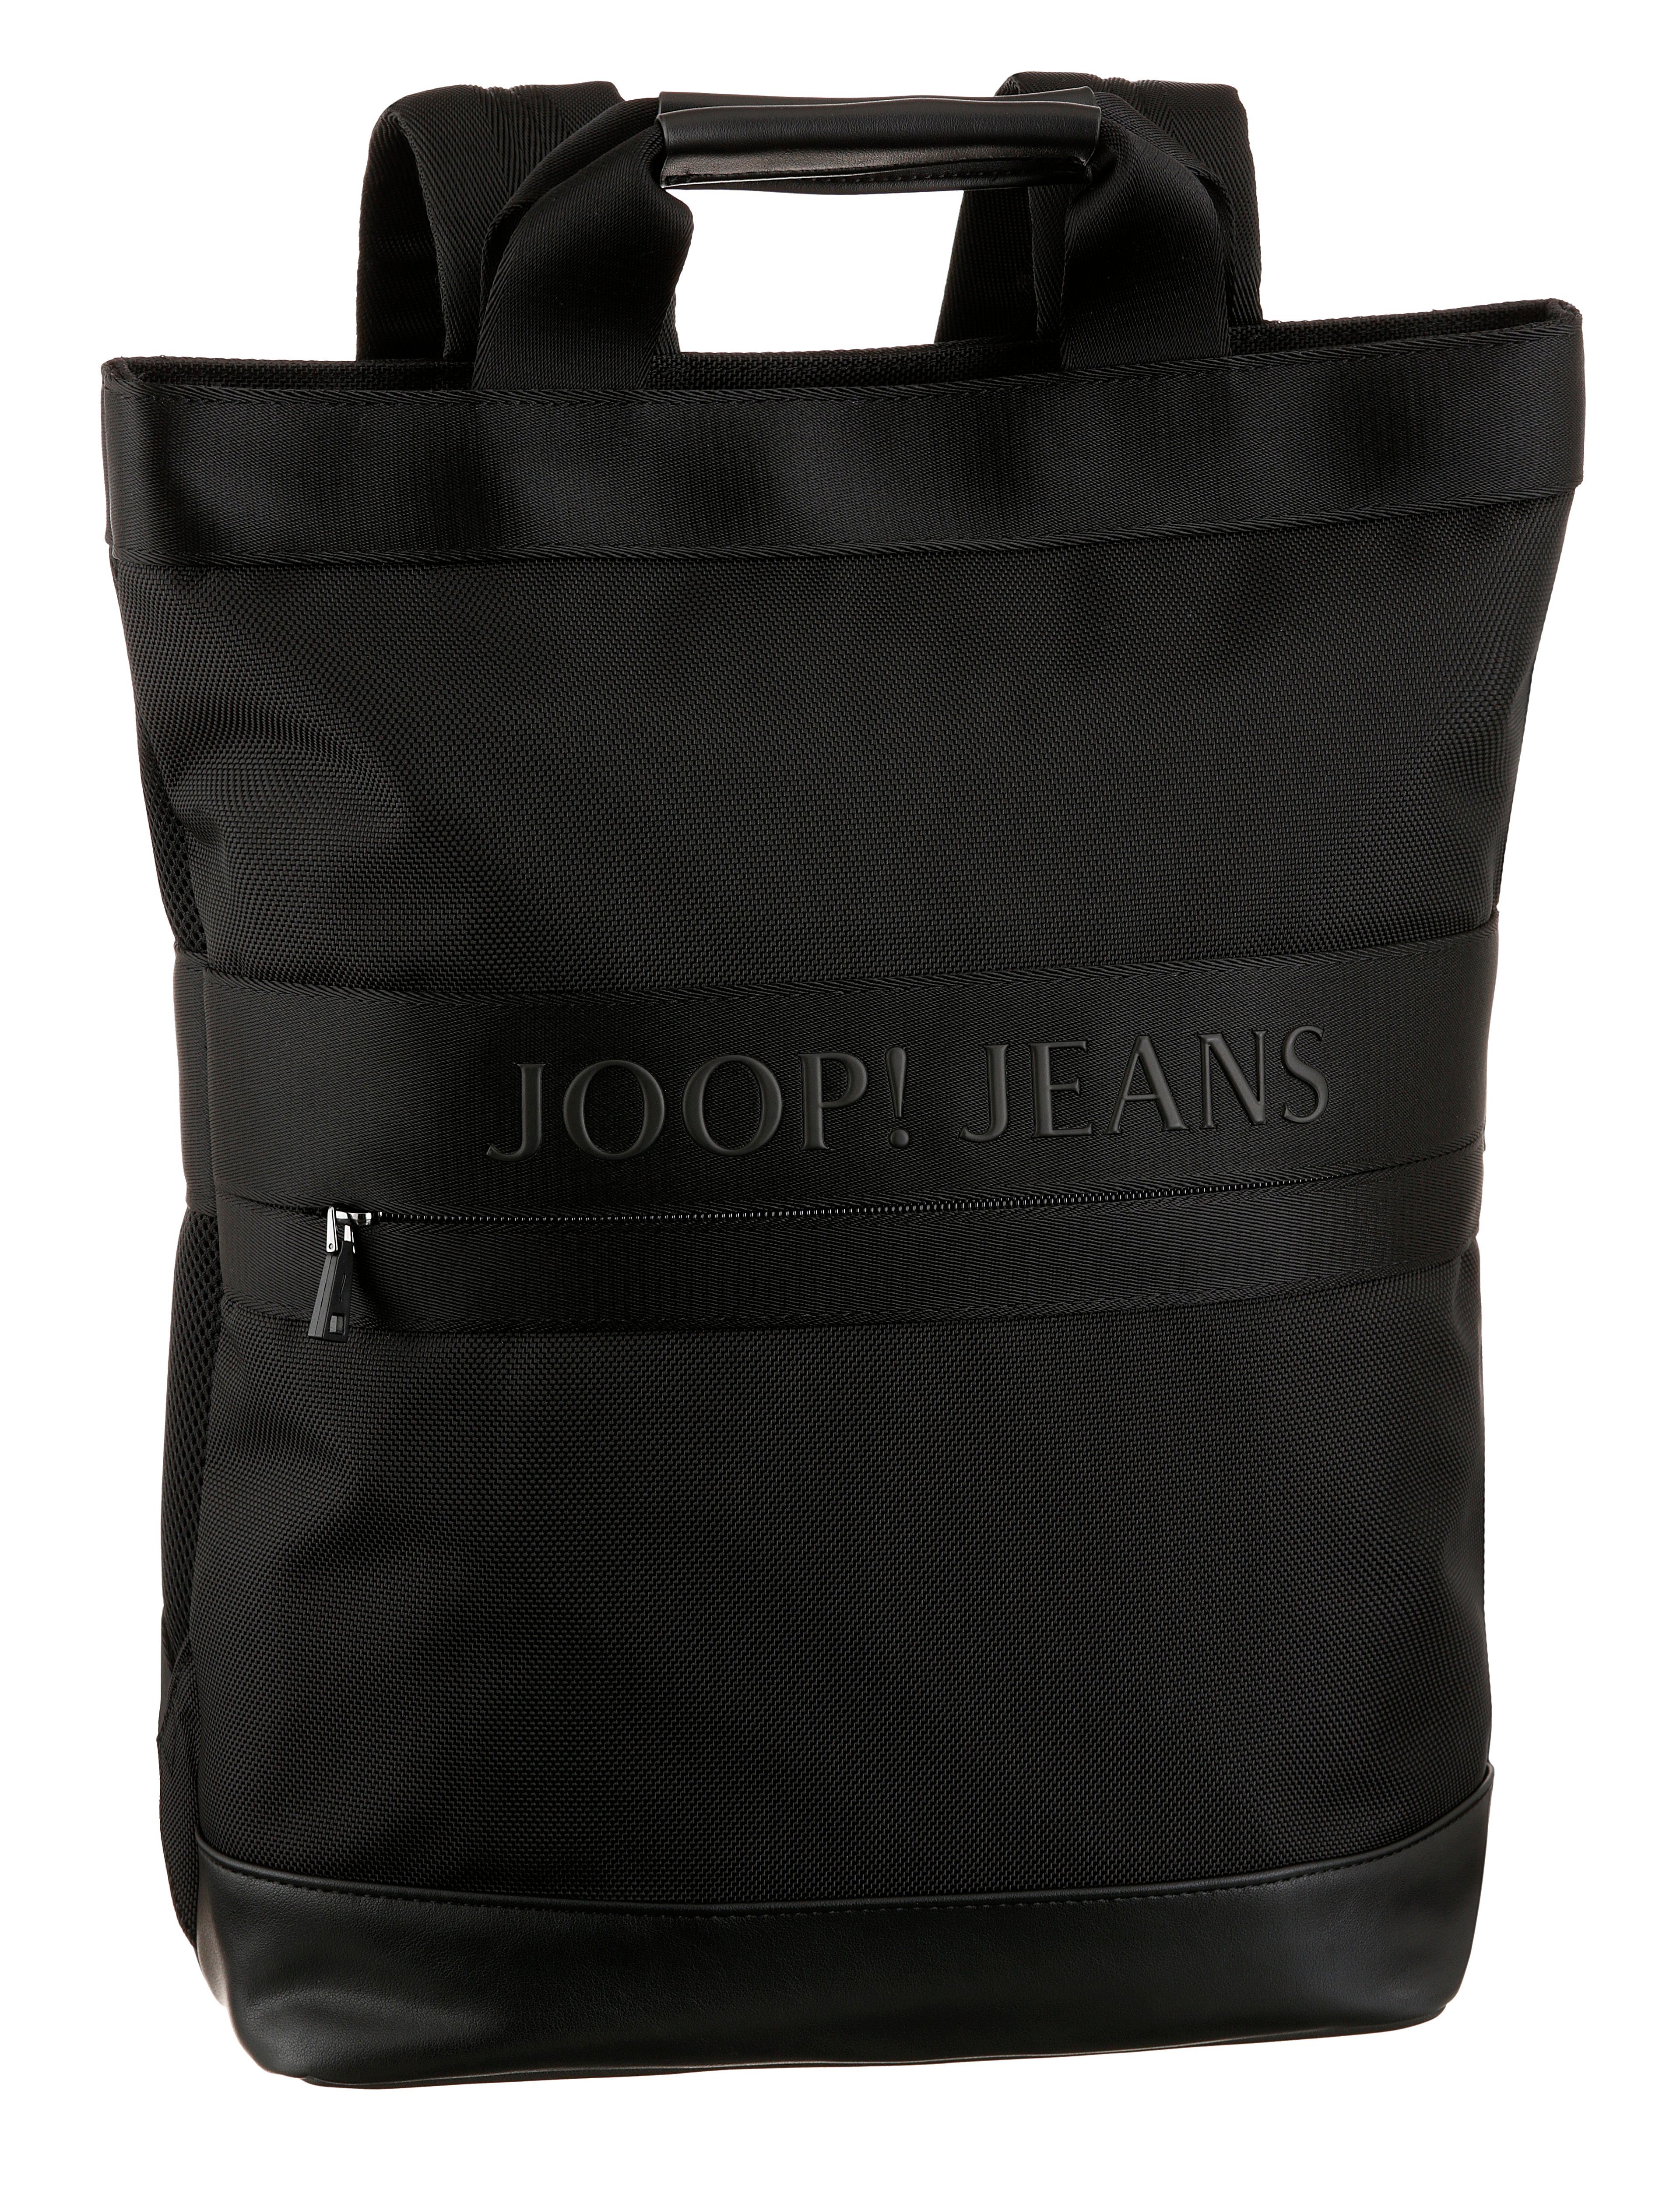 modica svz, mit black Joop Jeans Reißverschluss-Vortasche backpack Cityrucksack falk